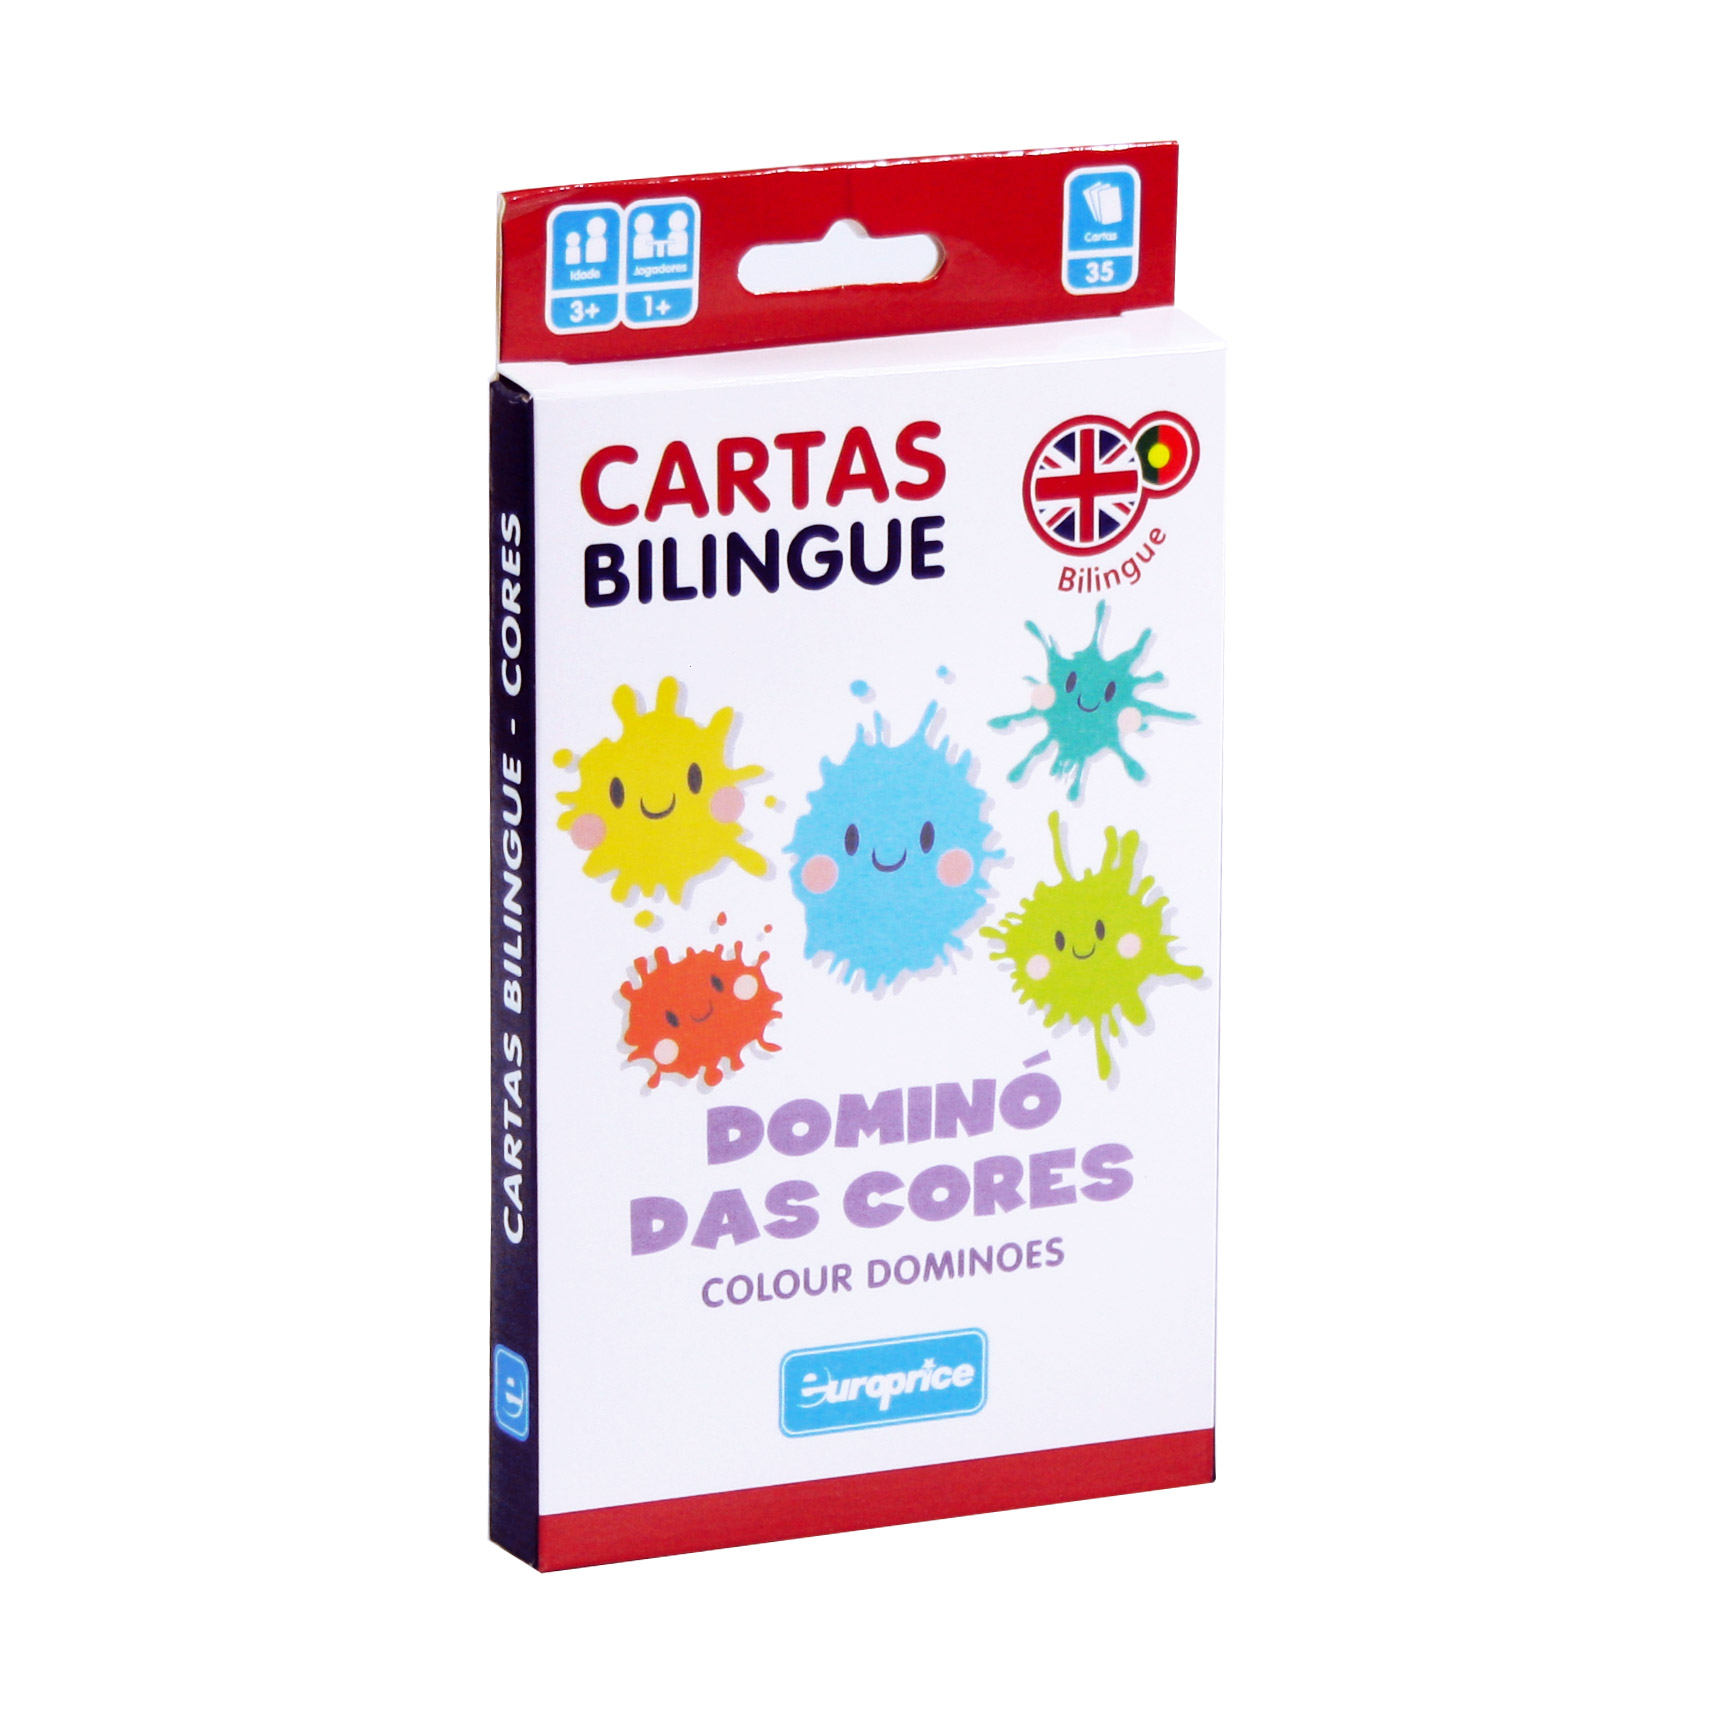 Caixa do jogo Cartas Bilingue - Dominó das Cores. É uma caixa de cartas vertical, em tons de branco, vermelho e azul escuro, com ilustrações de manchas de cores diferentes a sorrir.